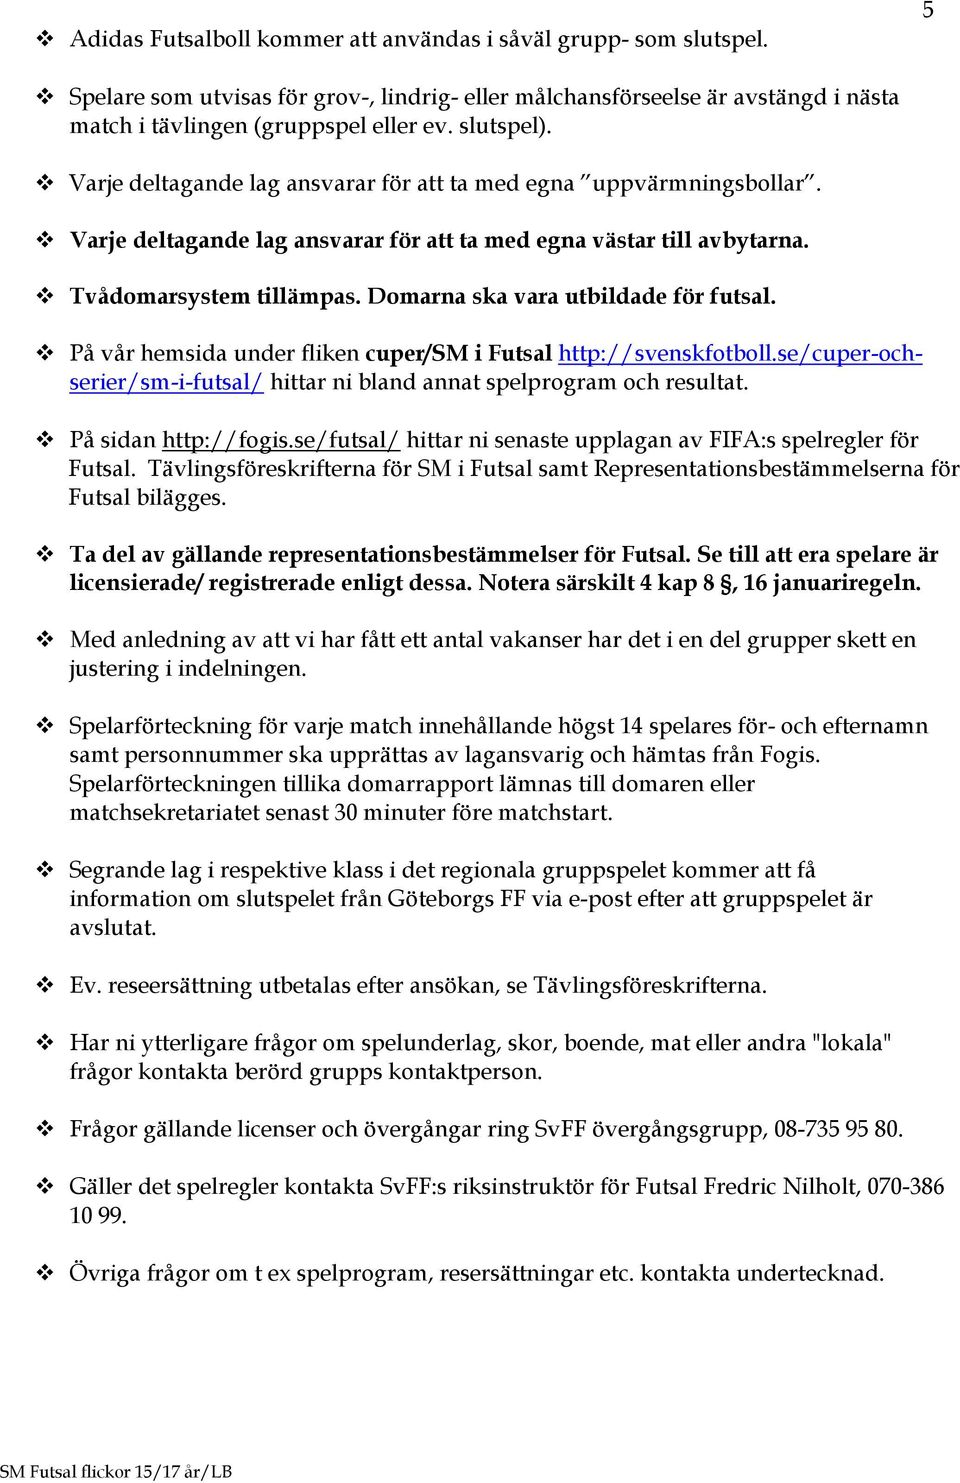 Domarna ska vara utbildade för futsal. På vår hemsida under fliken cuper/sm i Futsal http://svenskfotboll.se/cuper-ochserier/sm-i-futsal/ hittar ni bland annat spelprogram och resultat.